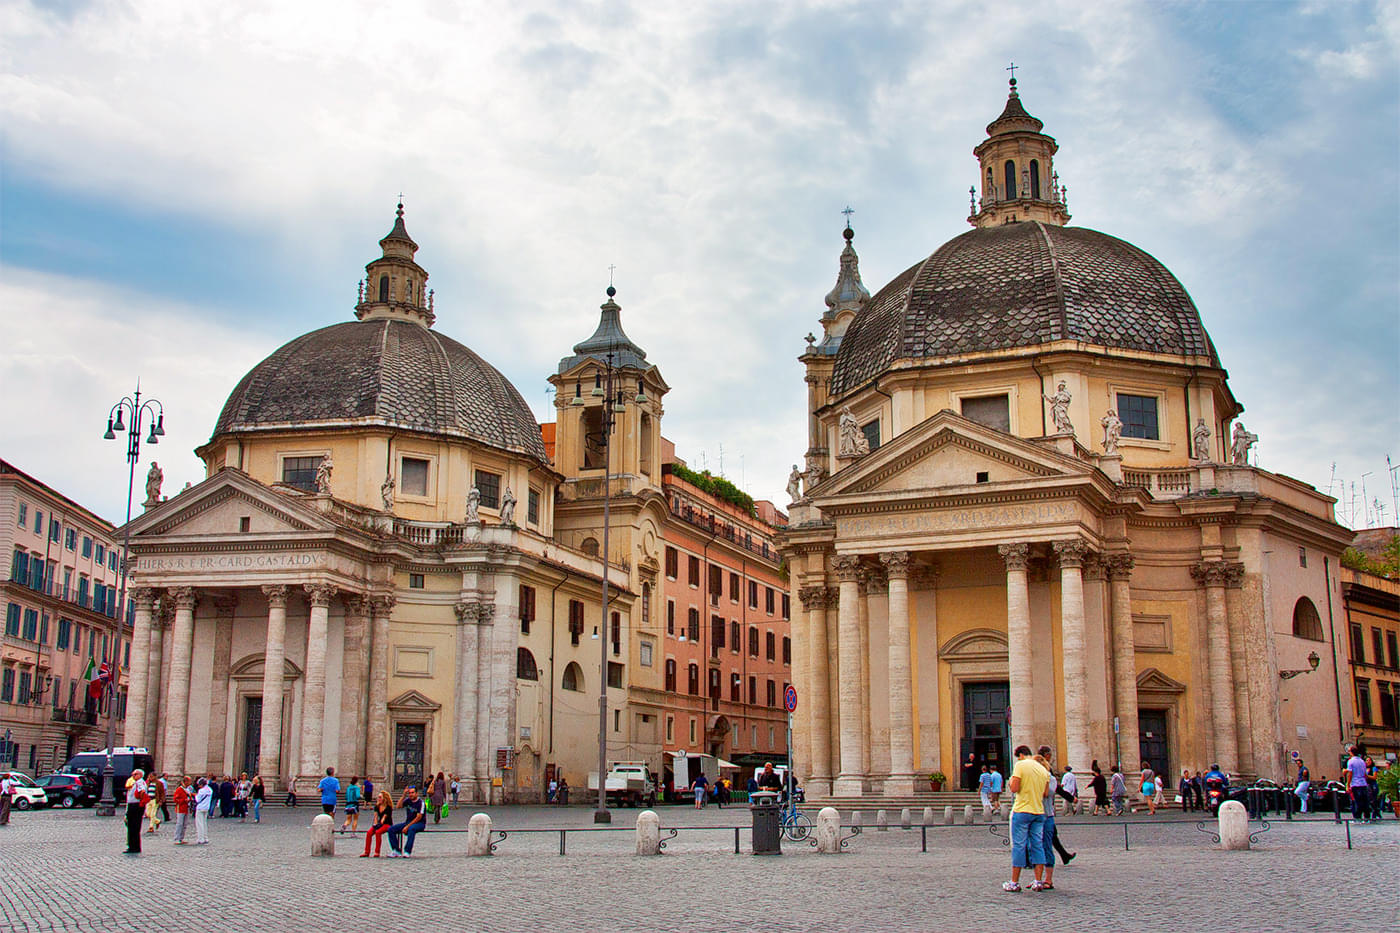 Piazza Del Popolo Overview